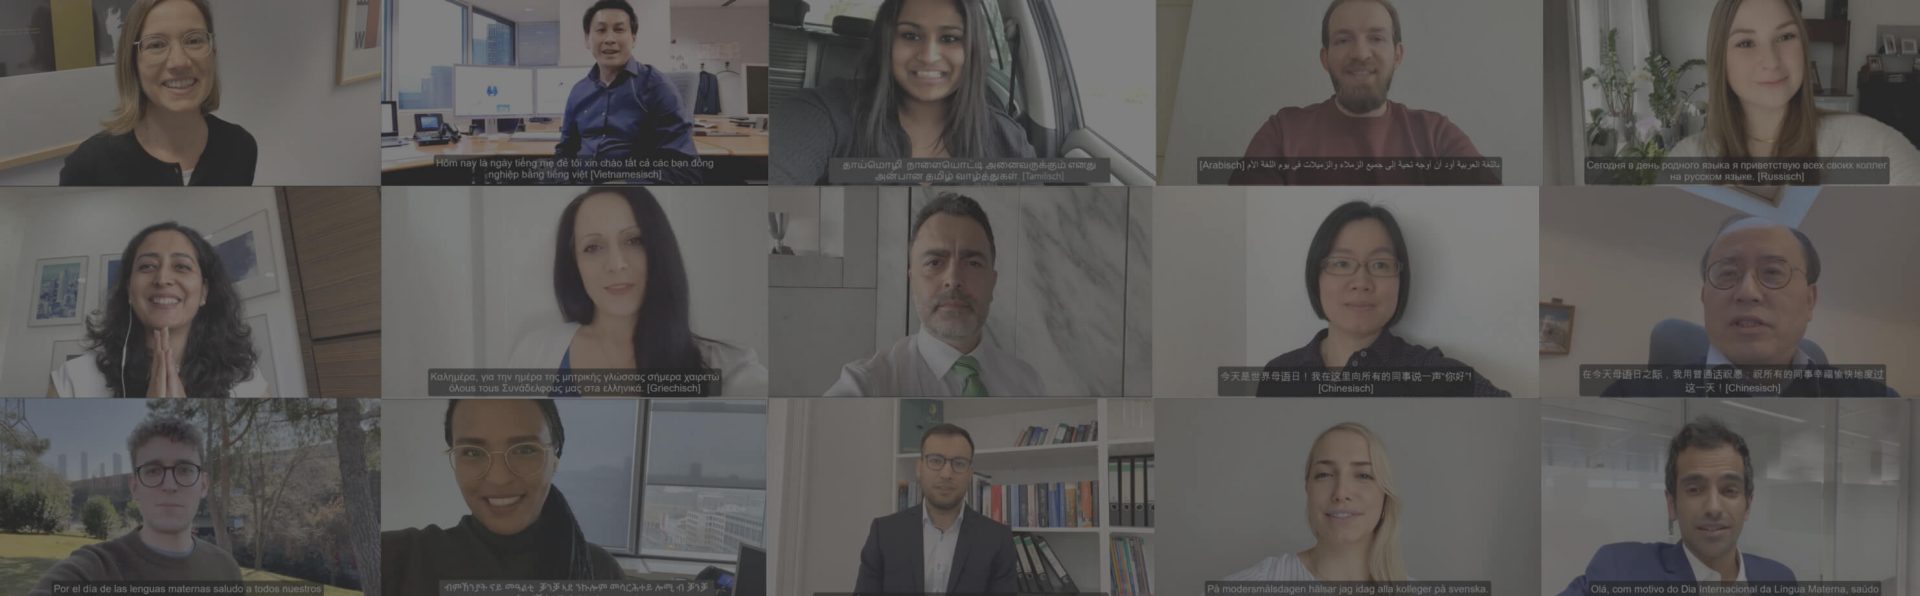 Eine Collage mit Screenshots von DZ BANK Mitarbeitenden, die im Video eine Grußbotschaft in ihrer jeweiligen Muttersprache aussenden.